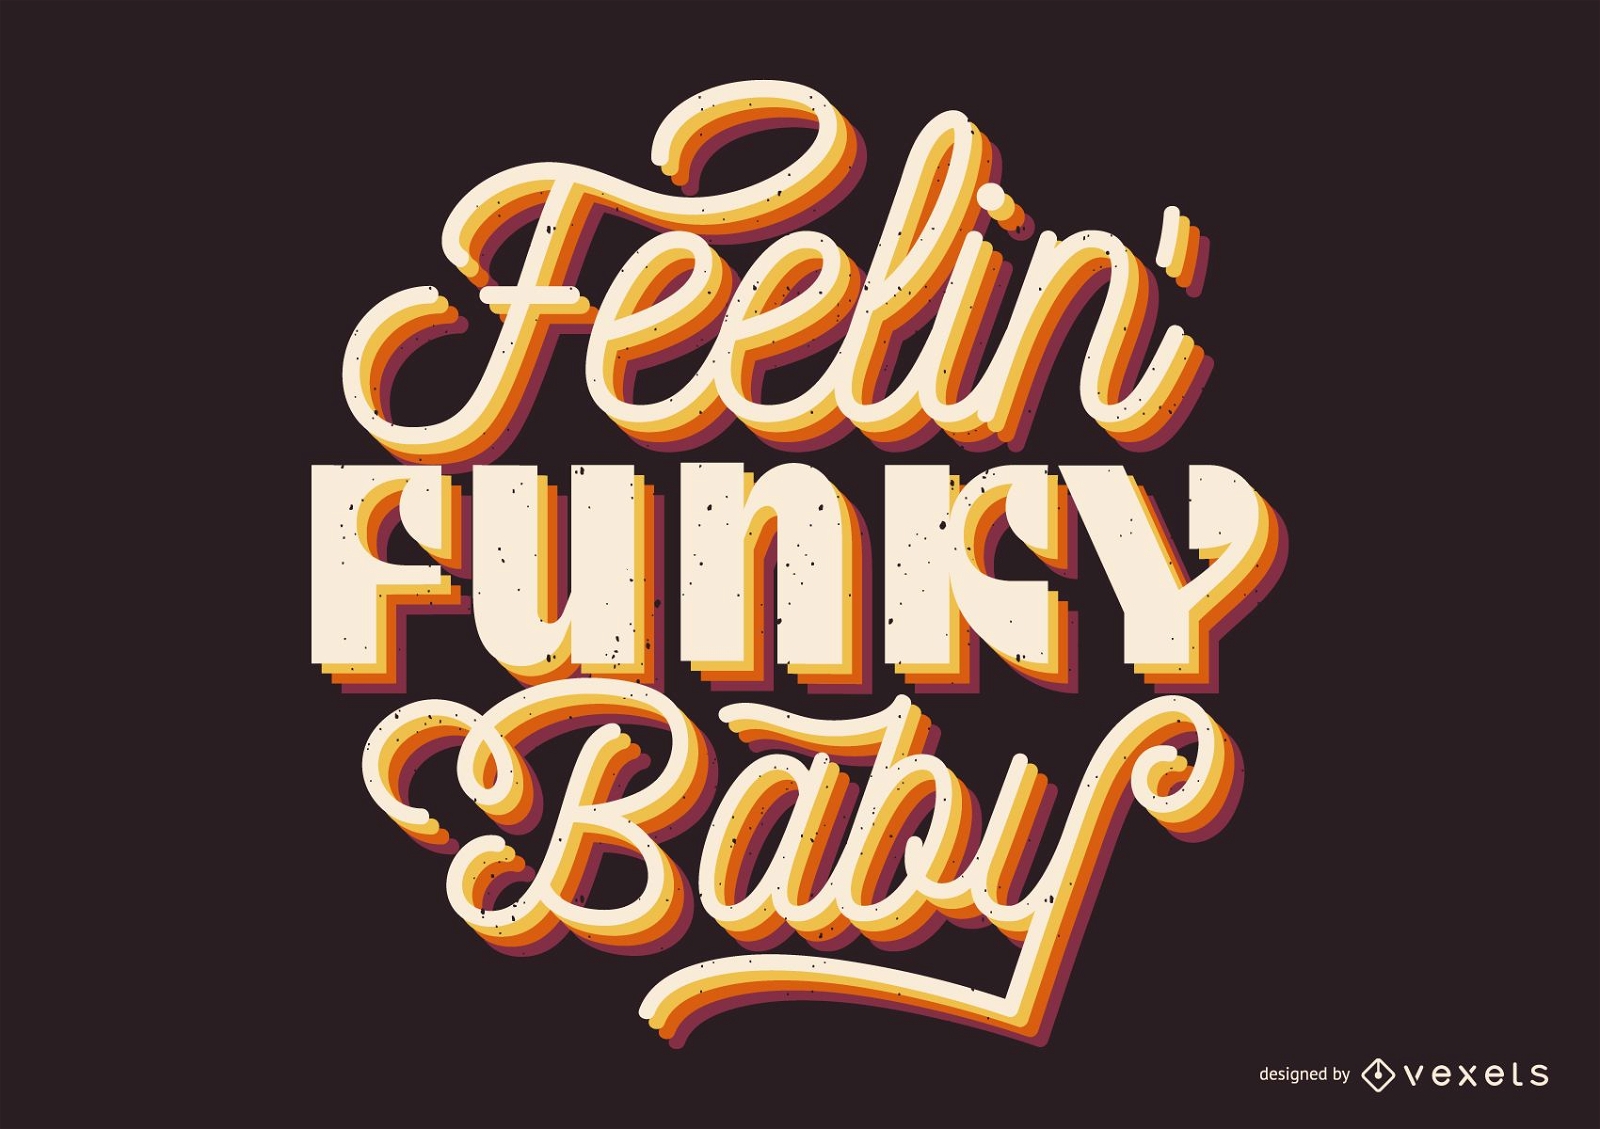 Feeling funky baby lettering